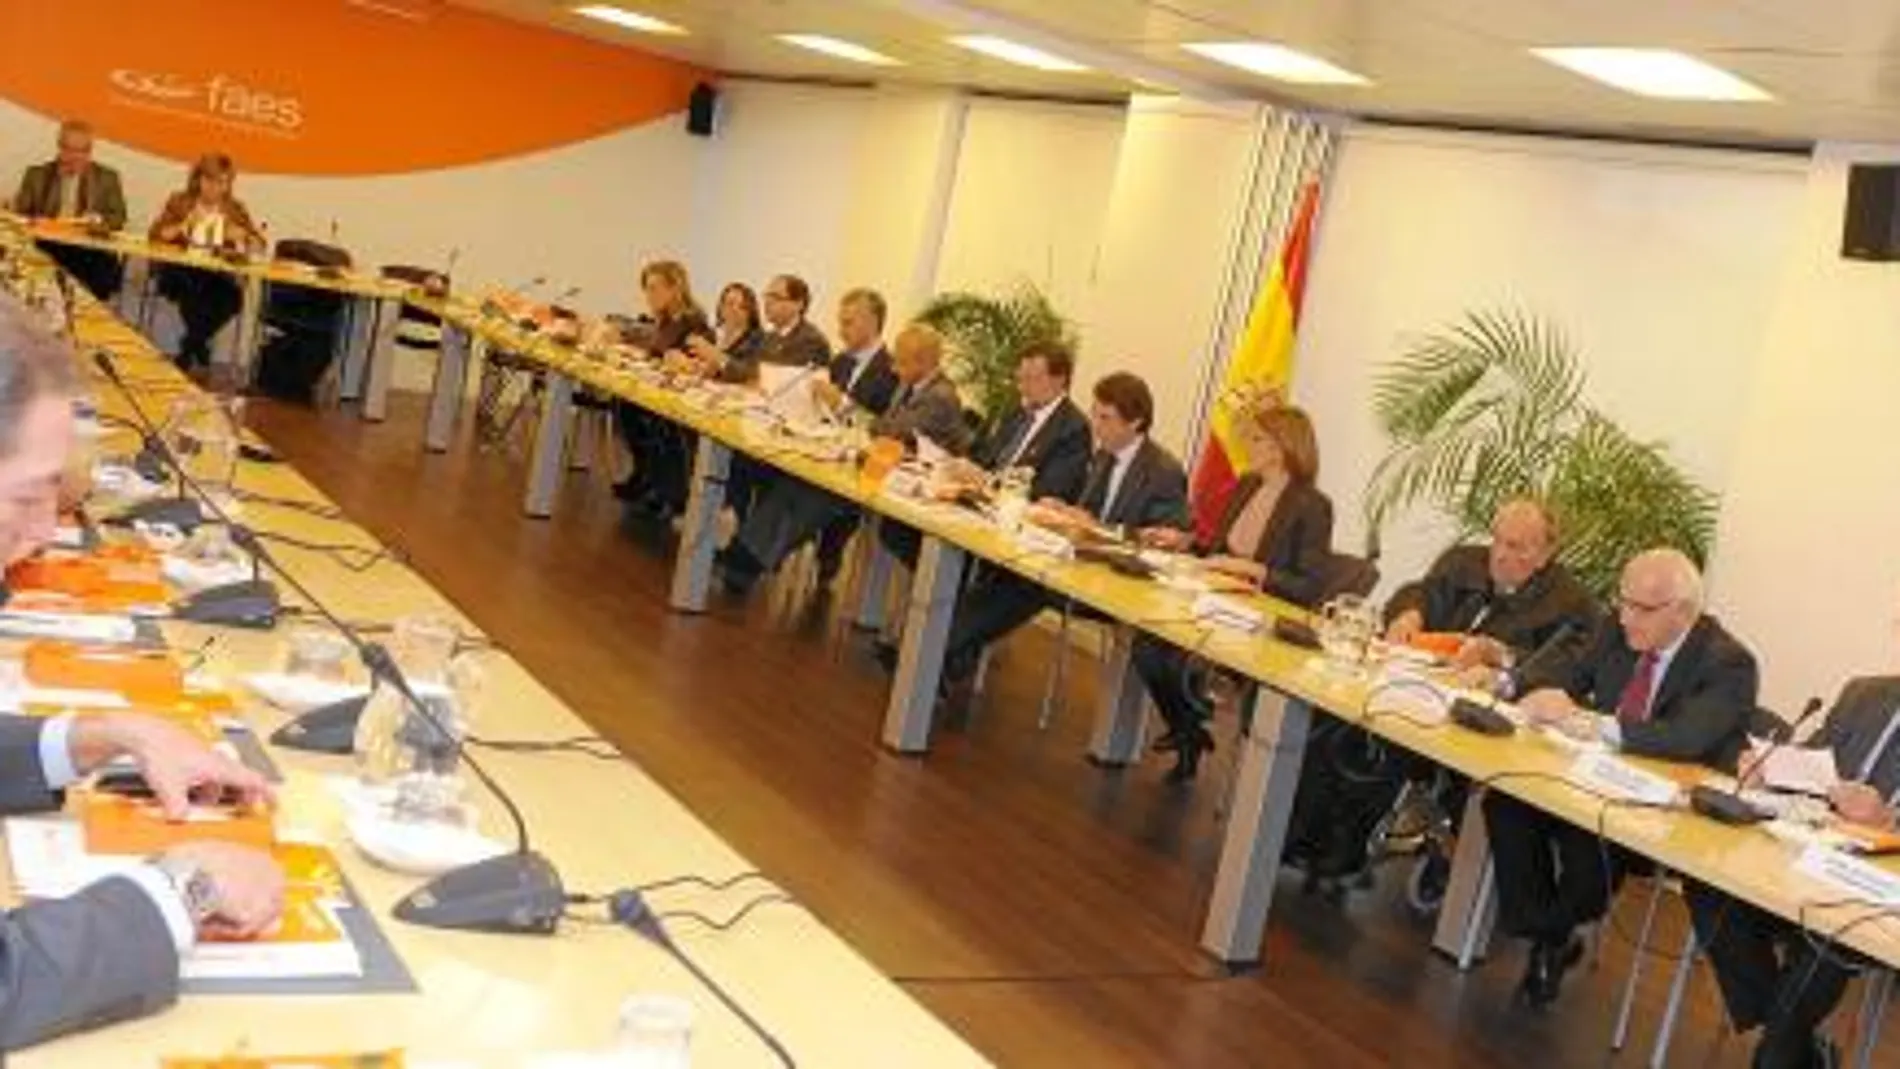 La reunión del patronato de FAES ayer en Madrid contó con la participación de la mayoría de sus 54 miembros